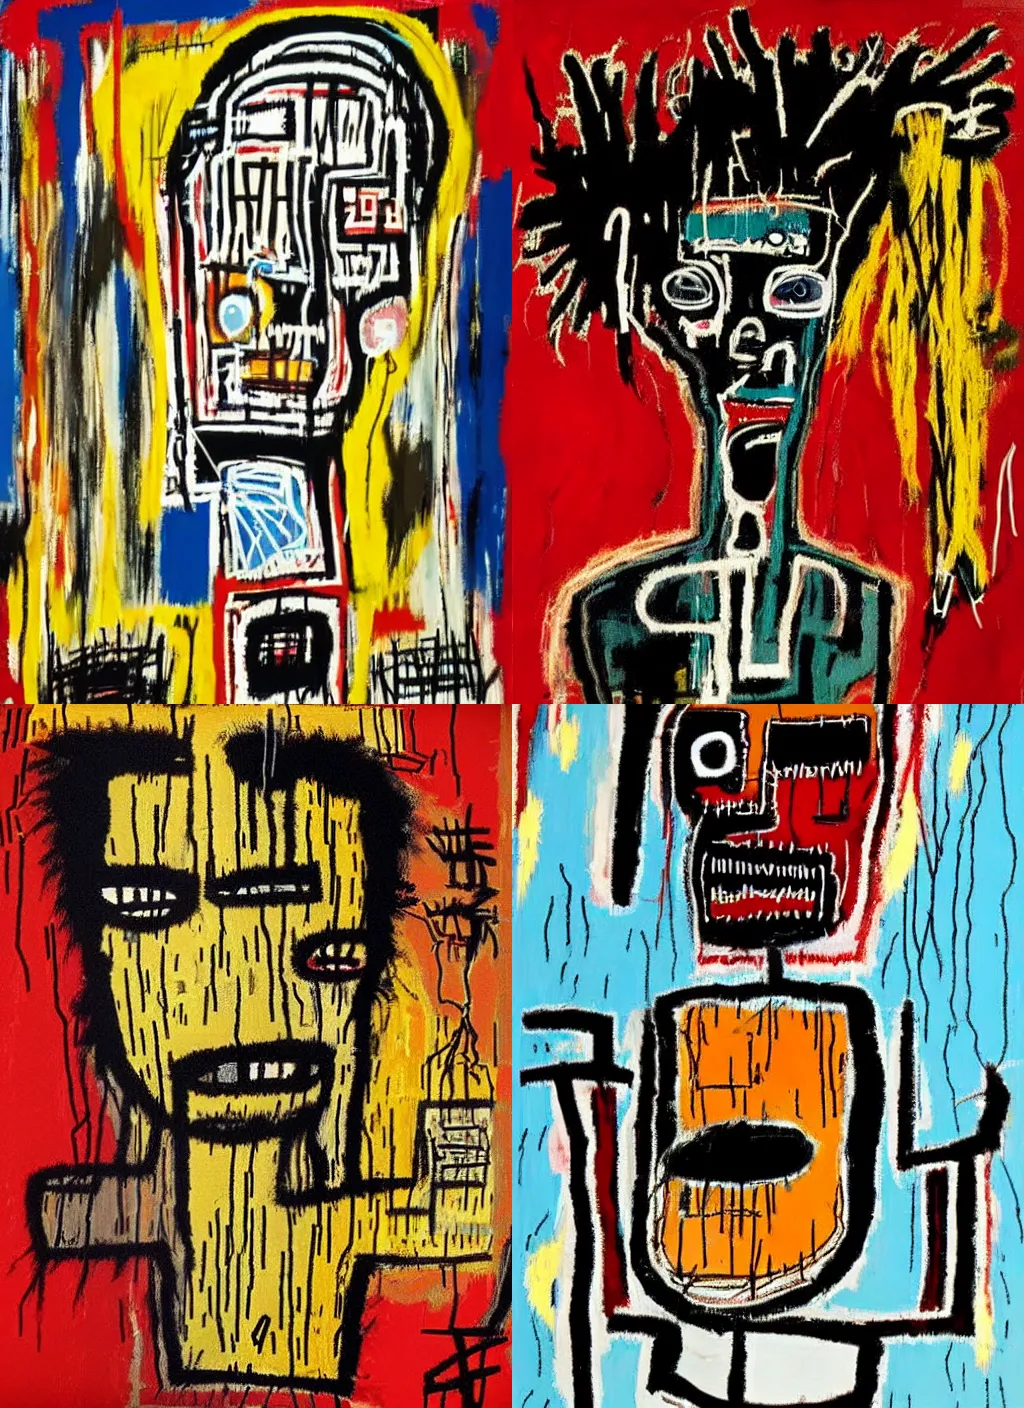 Prompt: mercy-tears, by Jean-Michel Basquiat